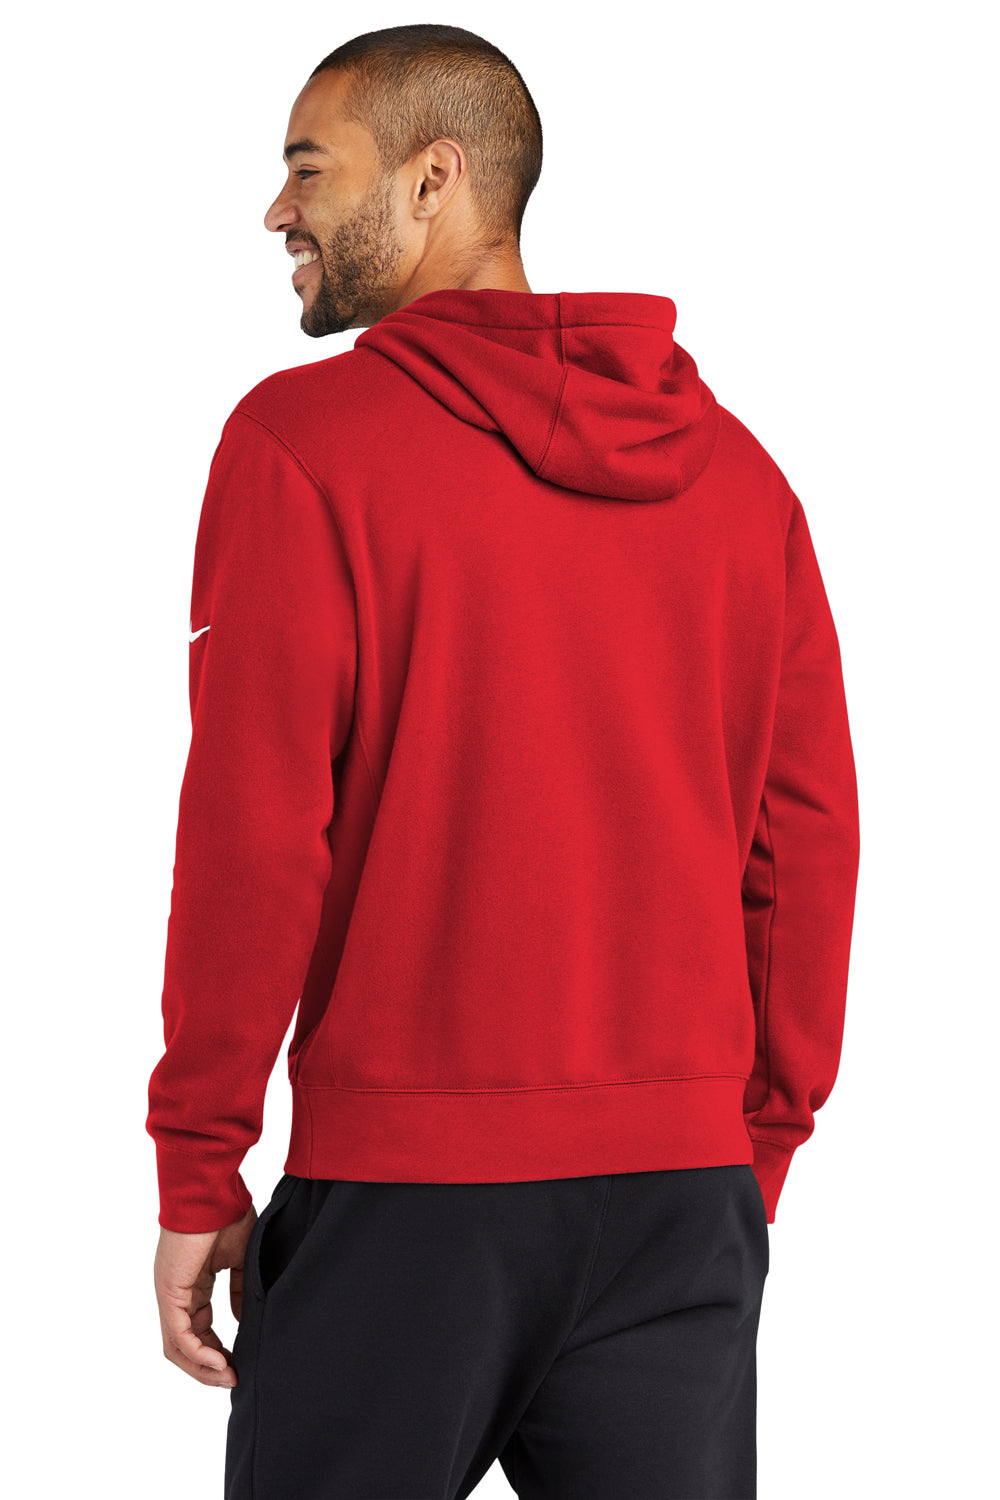 Nike NKDR1499 Mens Club Fleece Hooded Sweatshirt Hoodie University Red Model Back